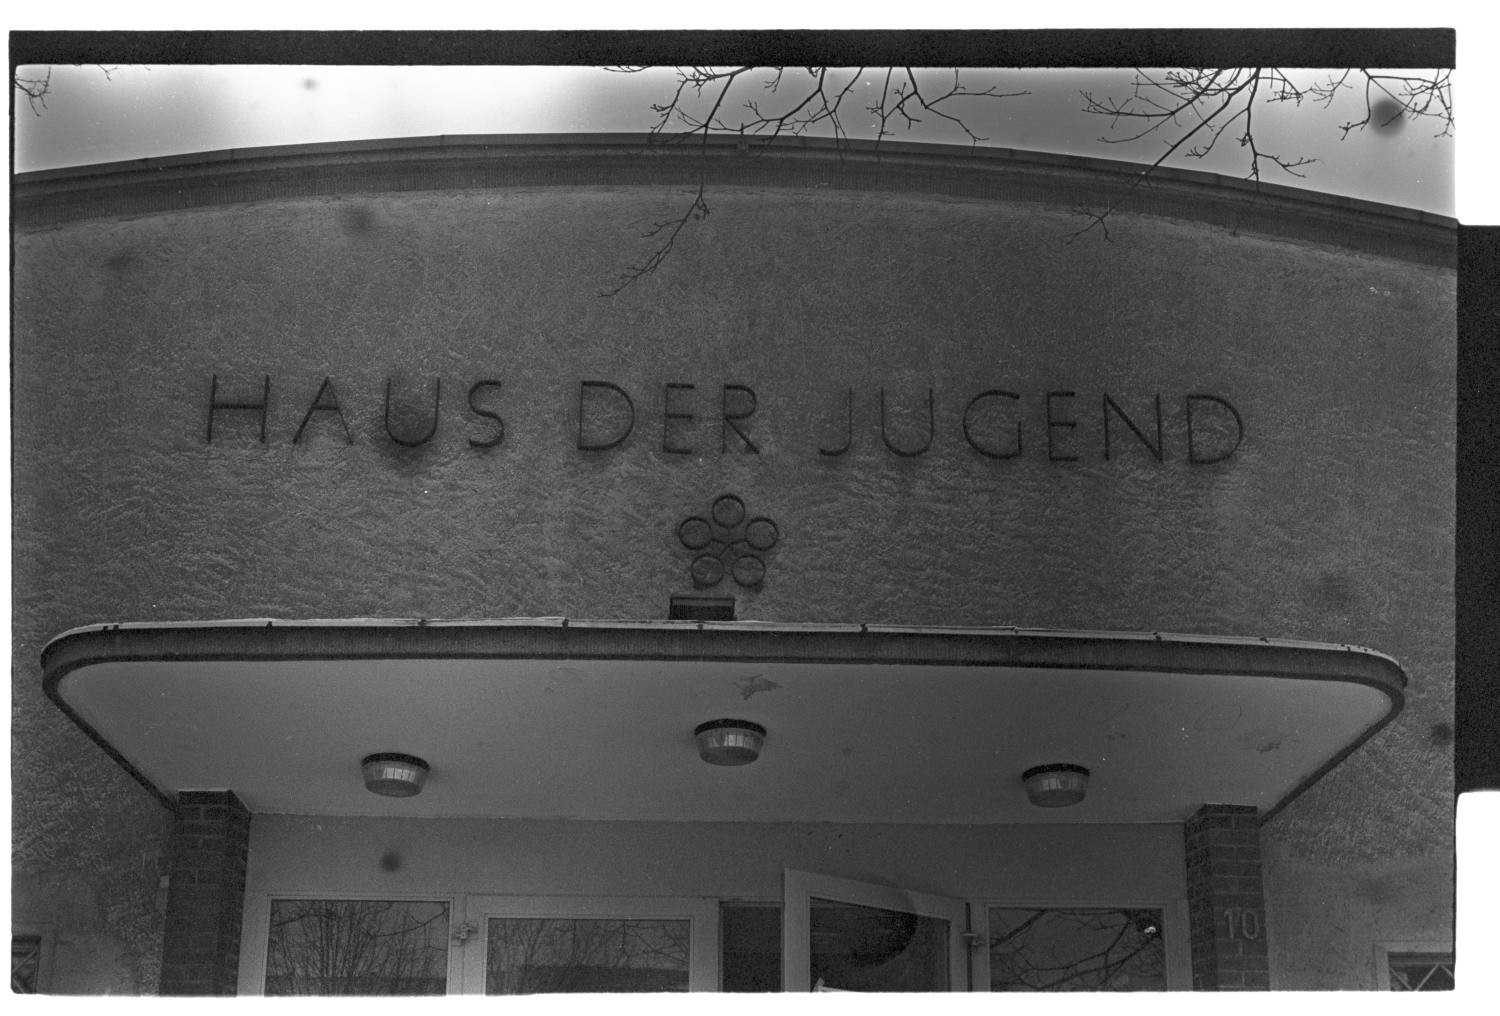 Kleinbildnegative: "Haus der Jugend - Die weiße Rose", 1983 (Museen Tempelhof-Schöneberg/Jürgen Henschel RR-F)